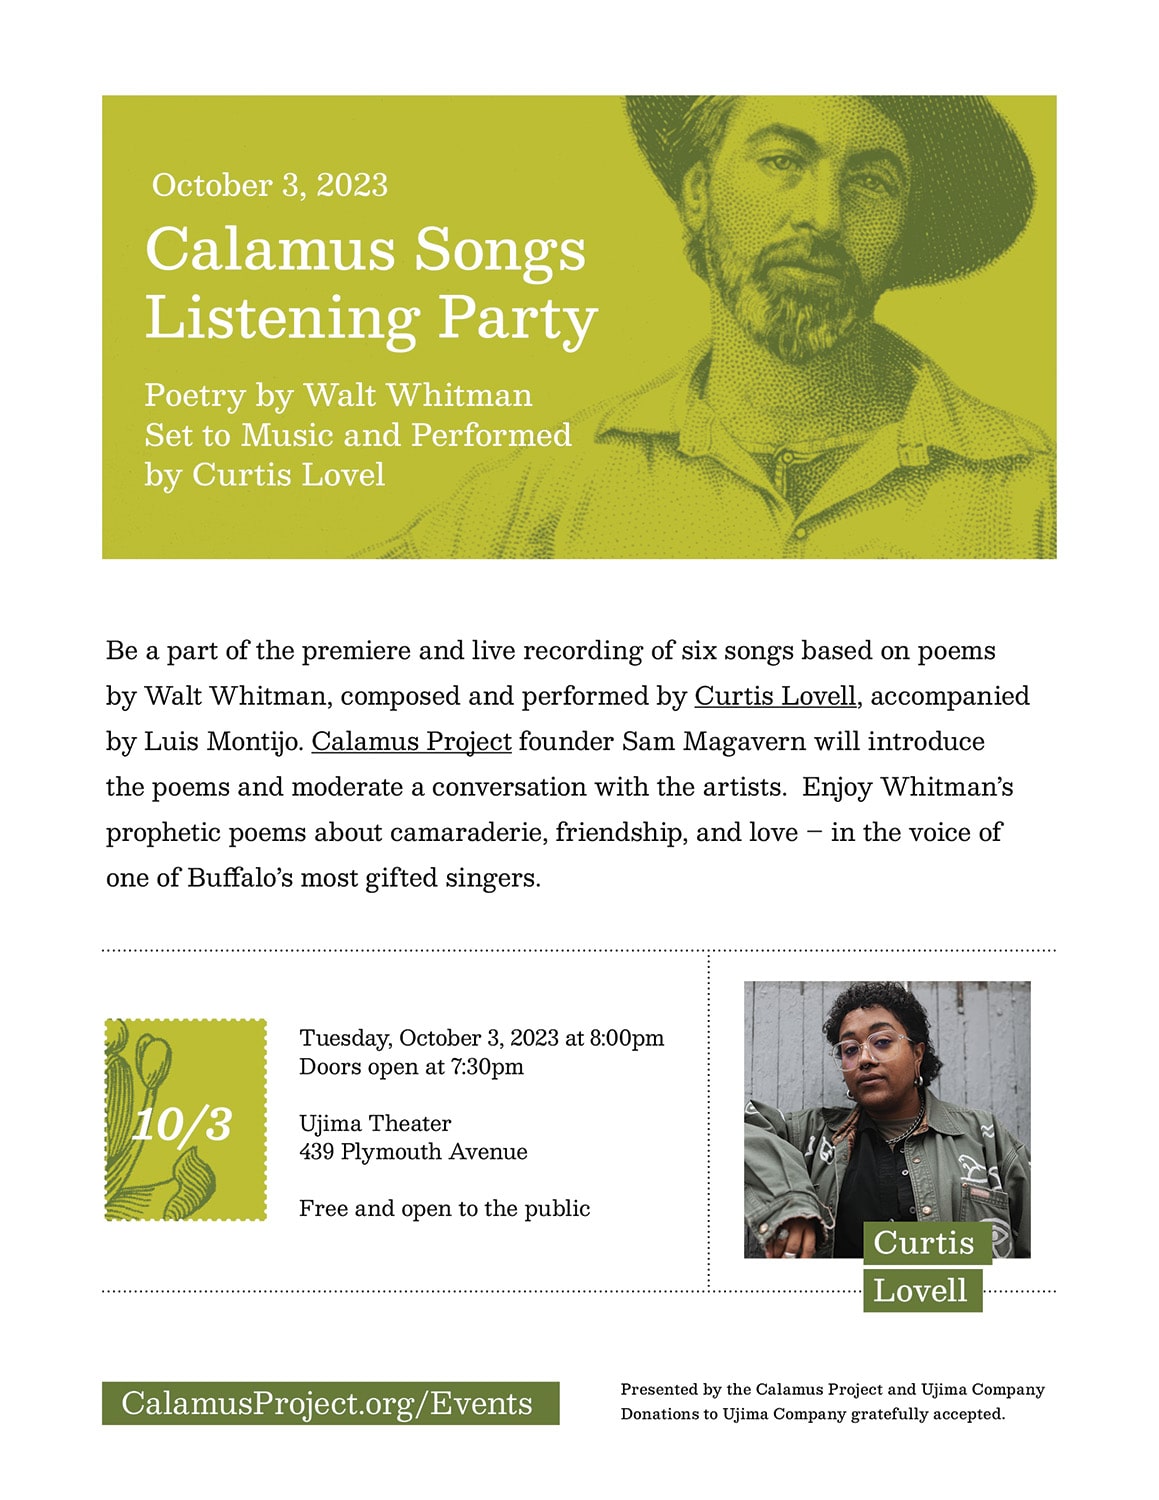 calamus songs